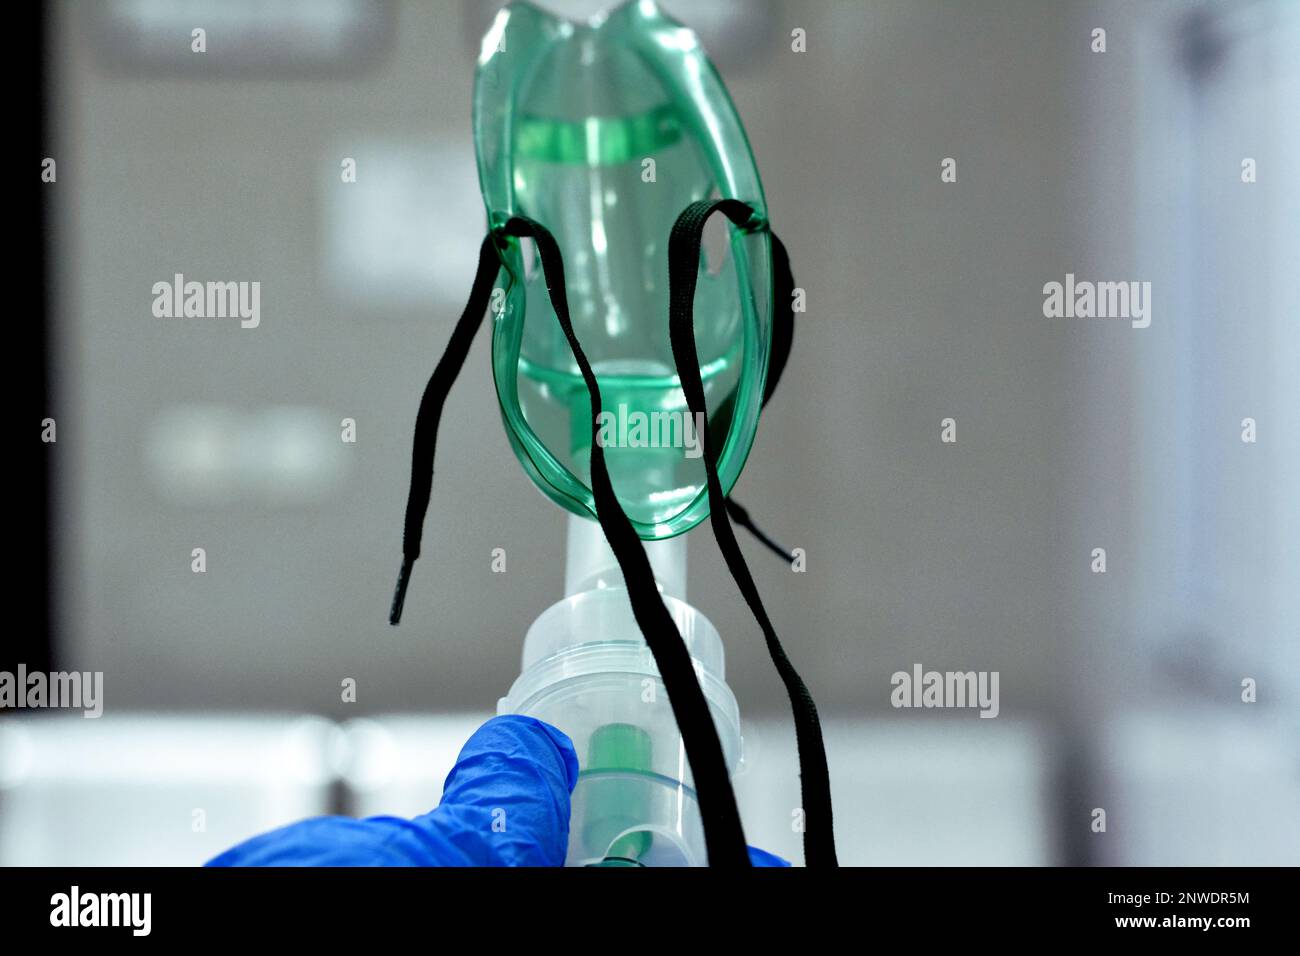 Un nebulizzatore o maschera nebulizzatore che è collegato a una bombola di ossigeno o a un dispositivo di somministrazione del farmaco utilizzato per somministrare un farmaco sotto forma di inalazione di nebbia Foto Stock